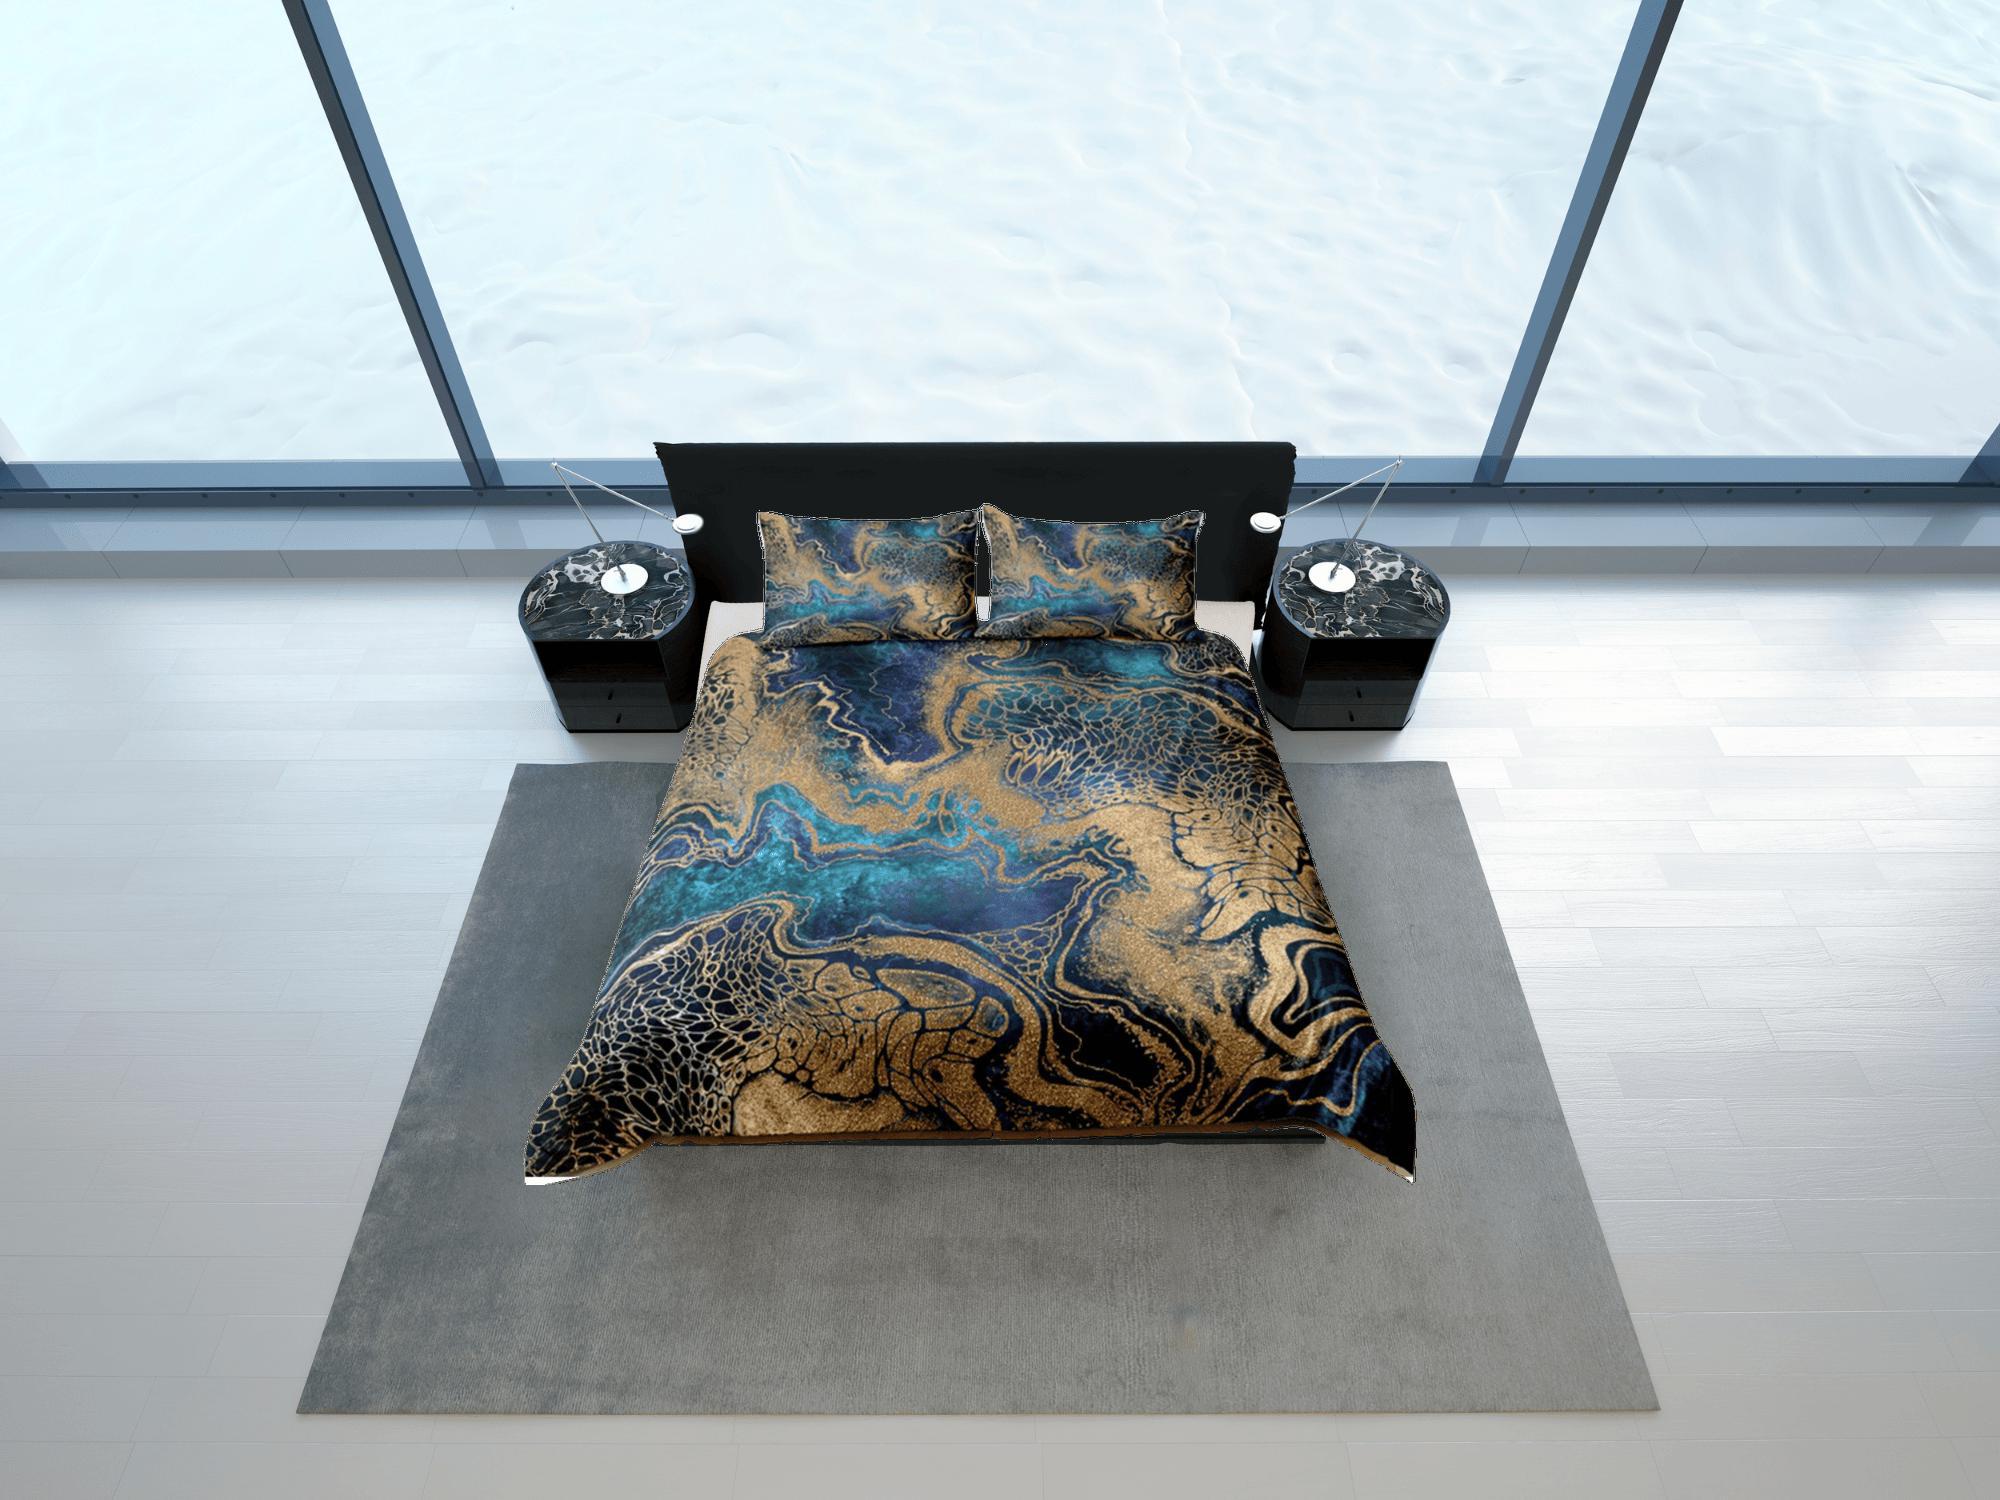 daintyduvet Gold Marble Swirl Blue Duvet Cover Set Colorful Bedspread, Dorm Bedding & Pillowcase, King Duvet Cover Full, Comforter Queen